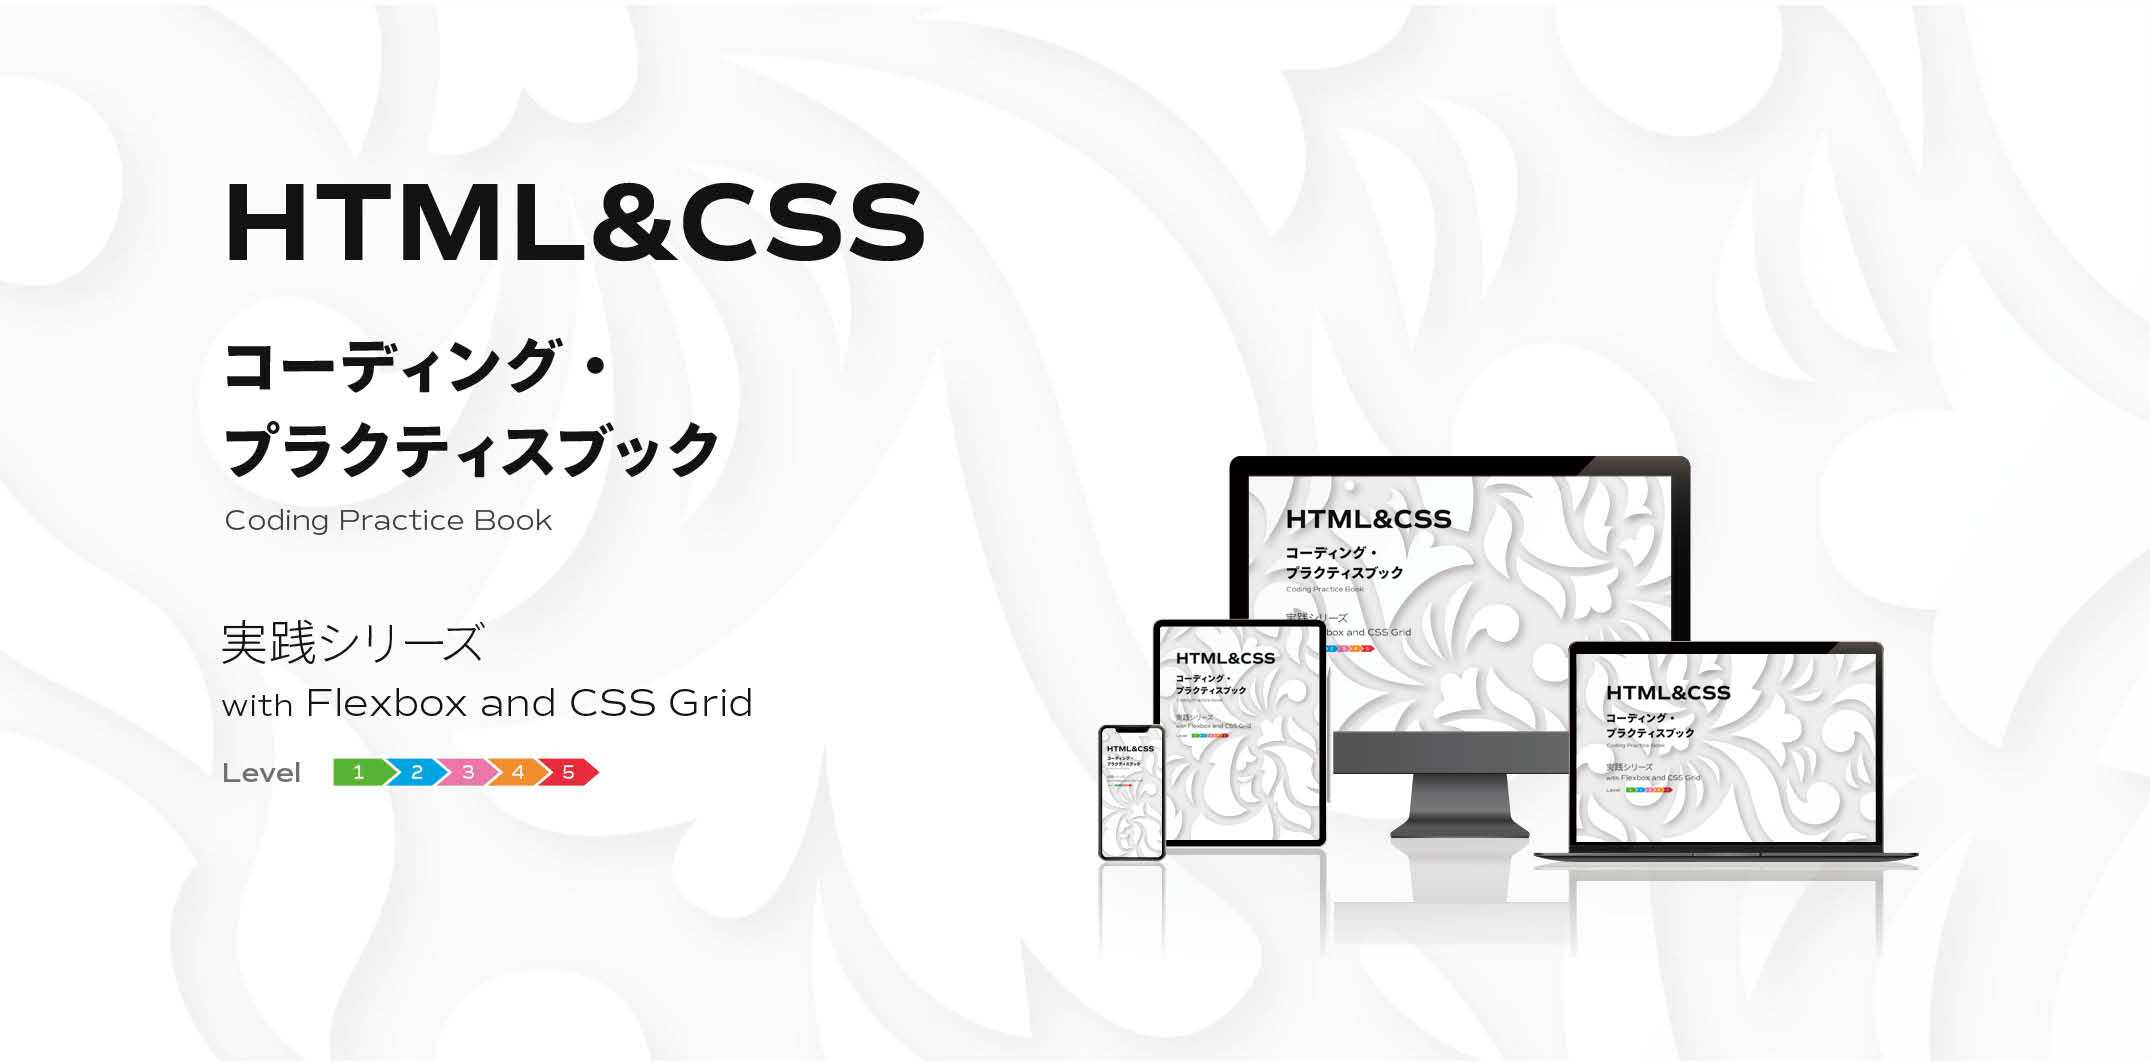 HTML&CSS コーディング・プラクティスブック